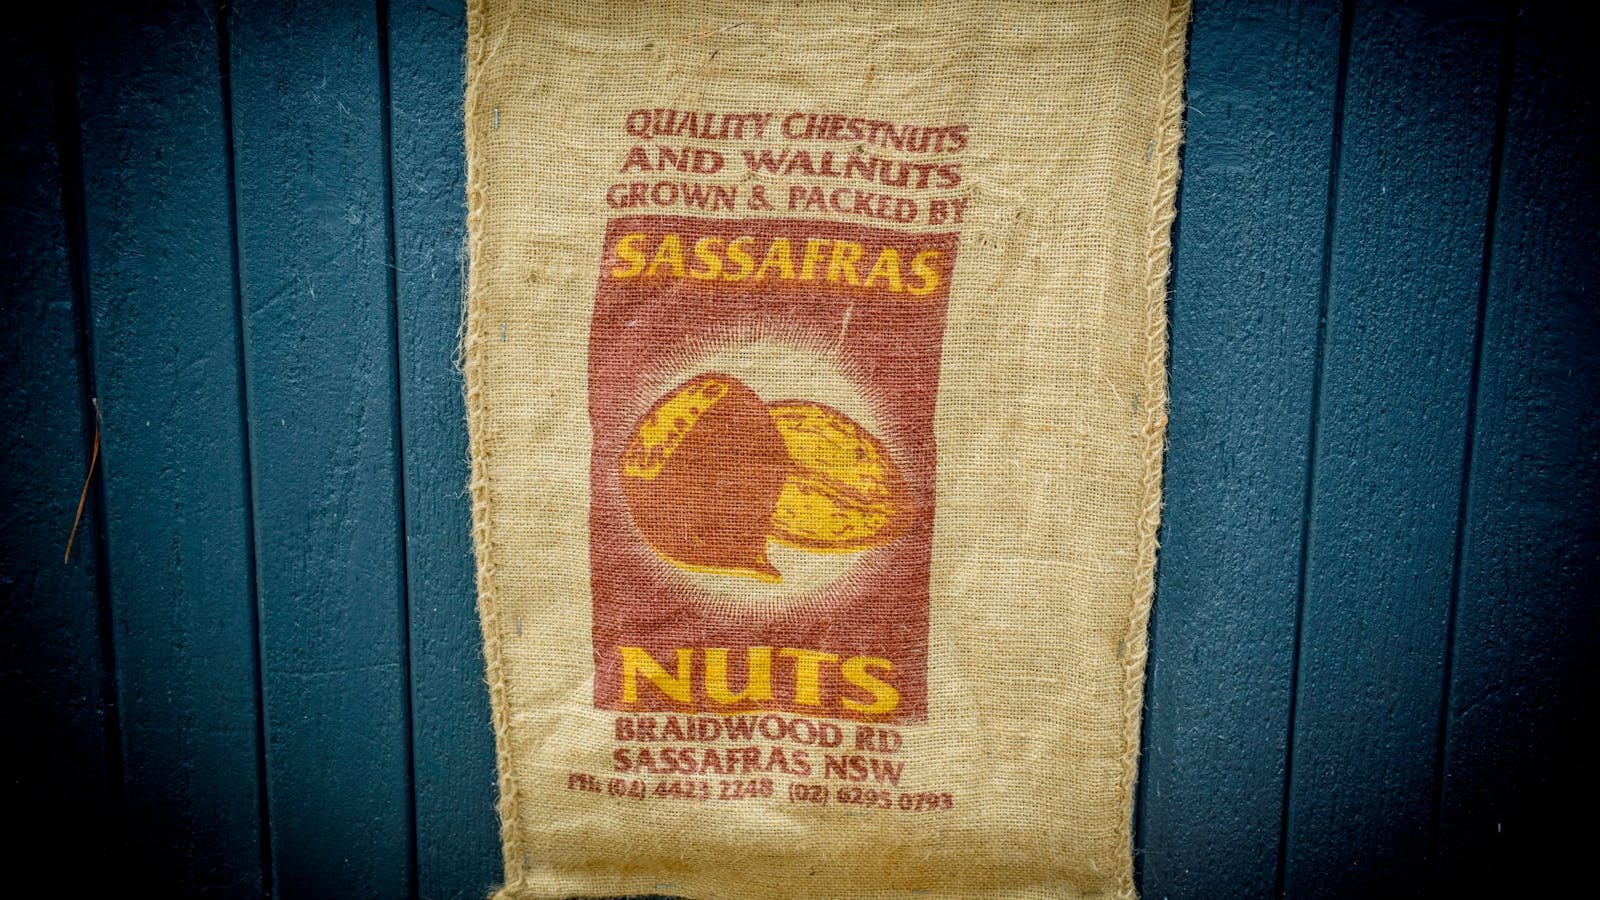 Sassafras Nuts